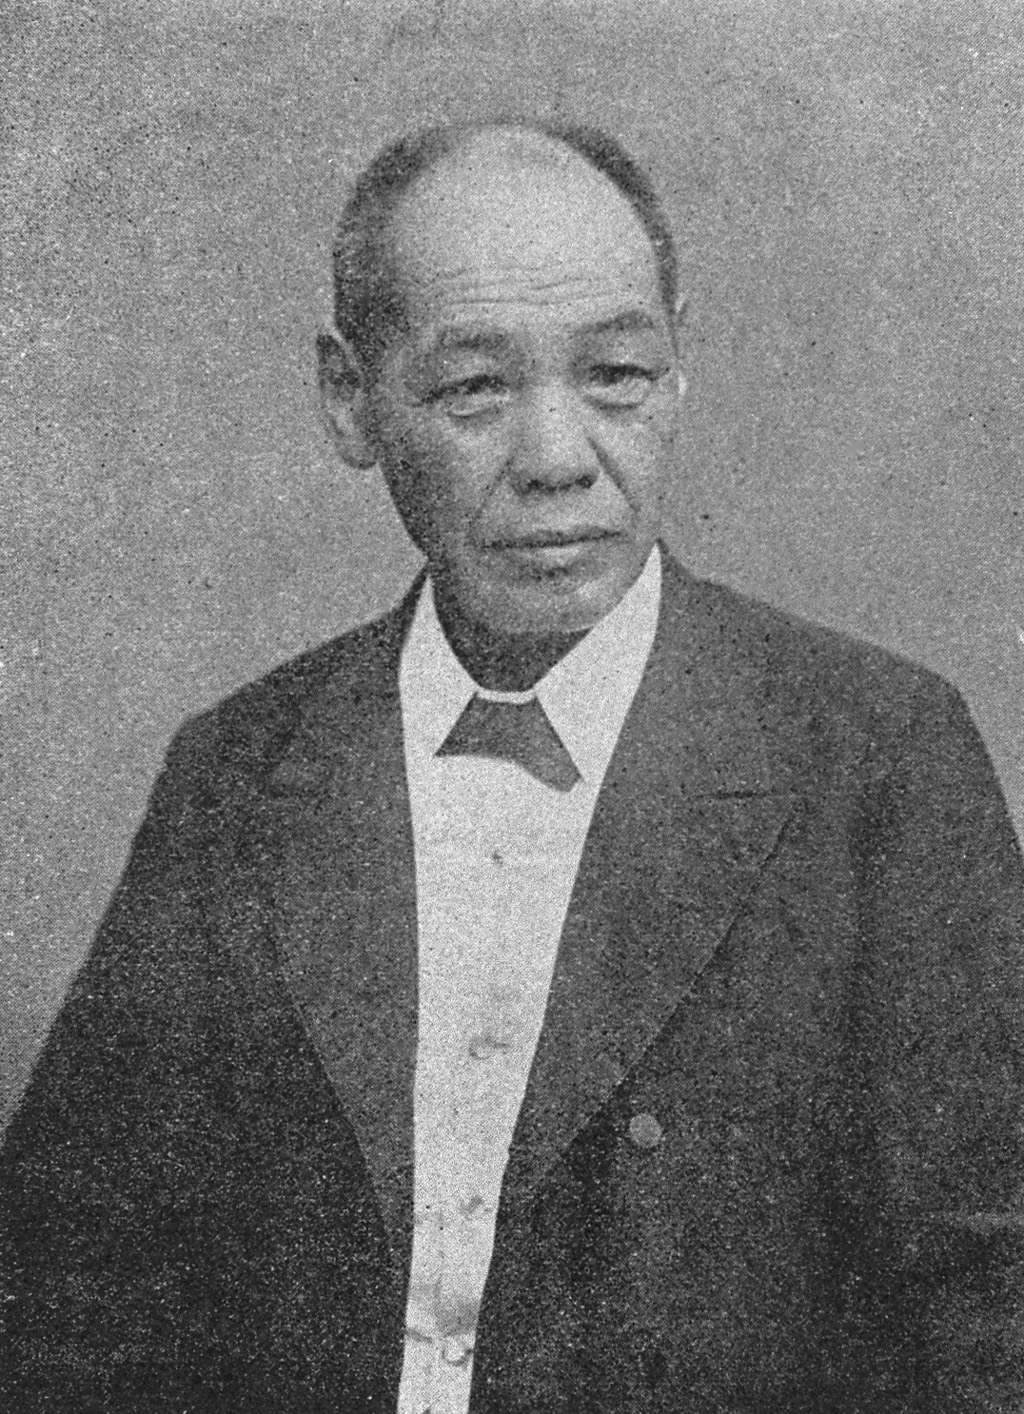 Portrait of ANZAI Tokubee1